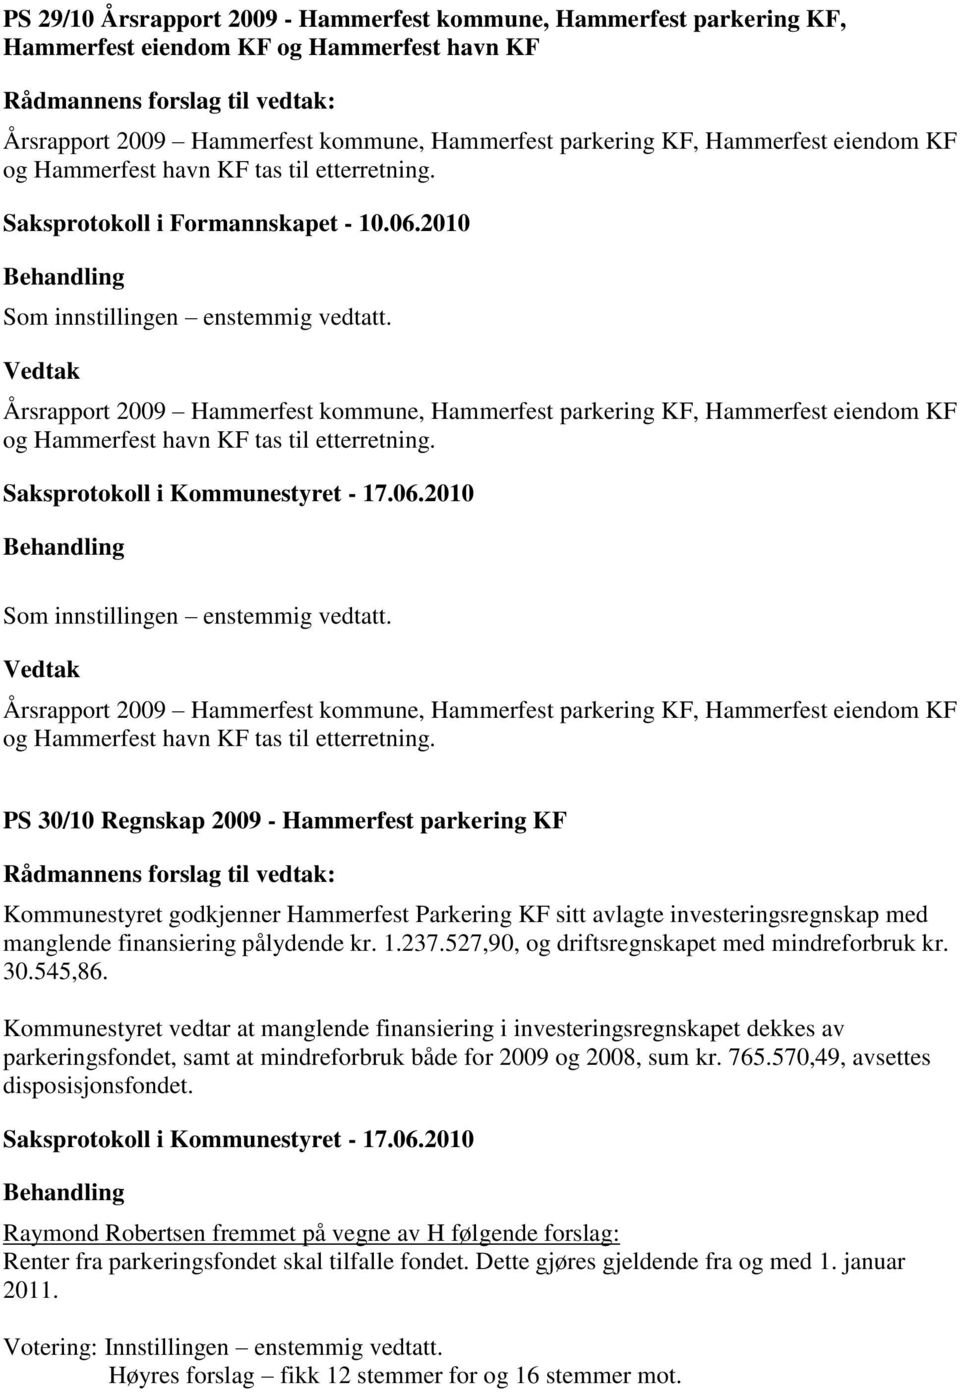 Årsrapport 2009 Hammerfest kommune, Hammerfest parkering KF, Hammerfest eiendom KF og Hammerfest havn KF tas til etterretning. Som innstillingen enstemmig vedtatt.